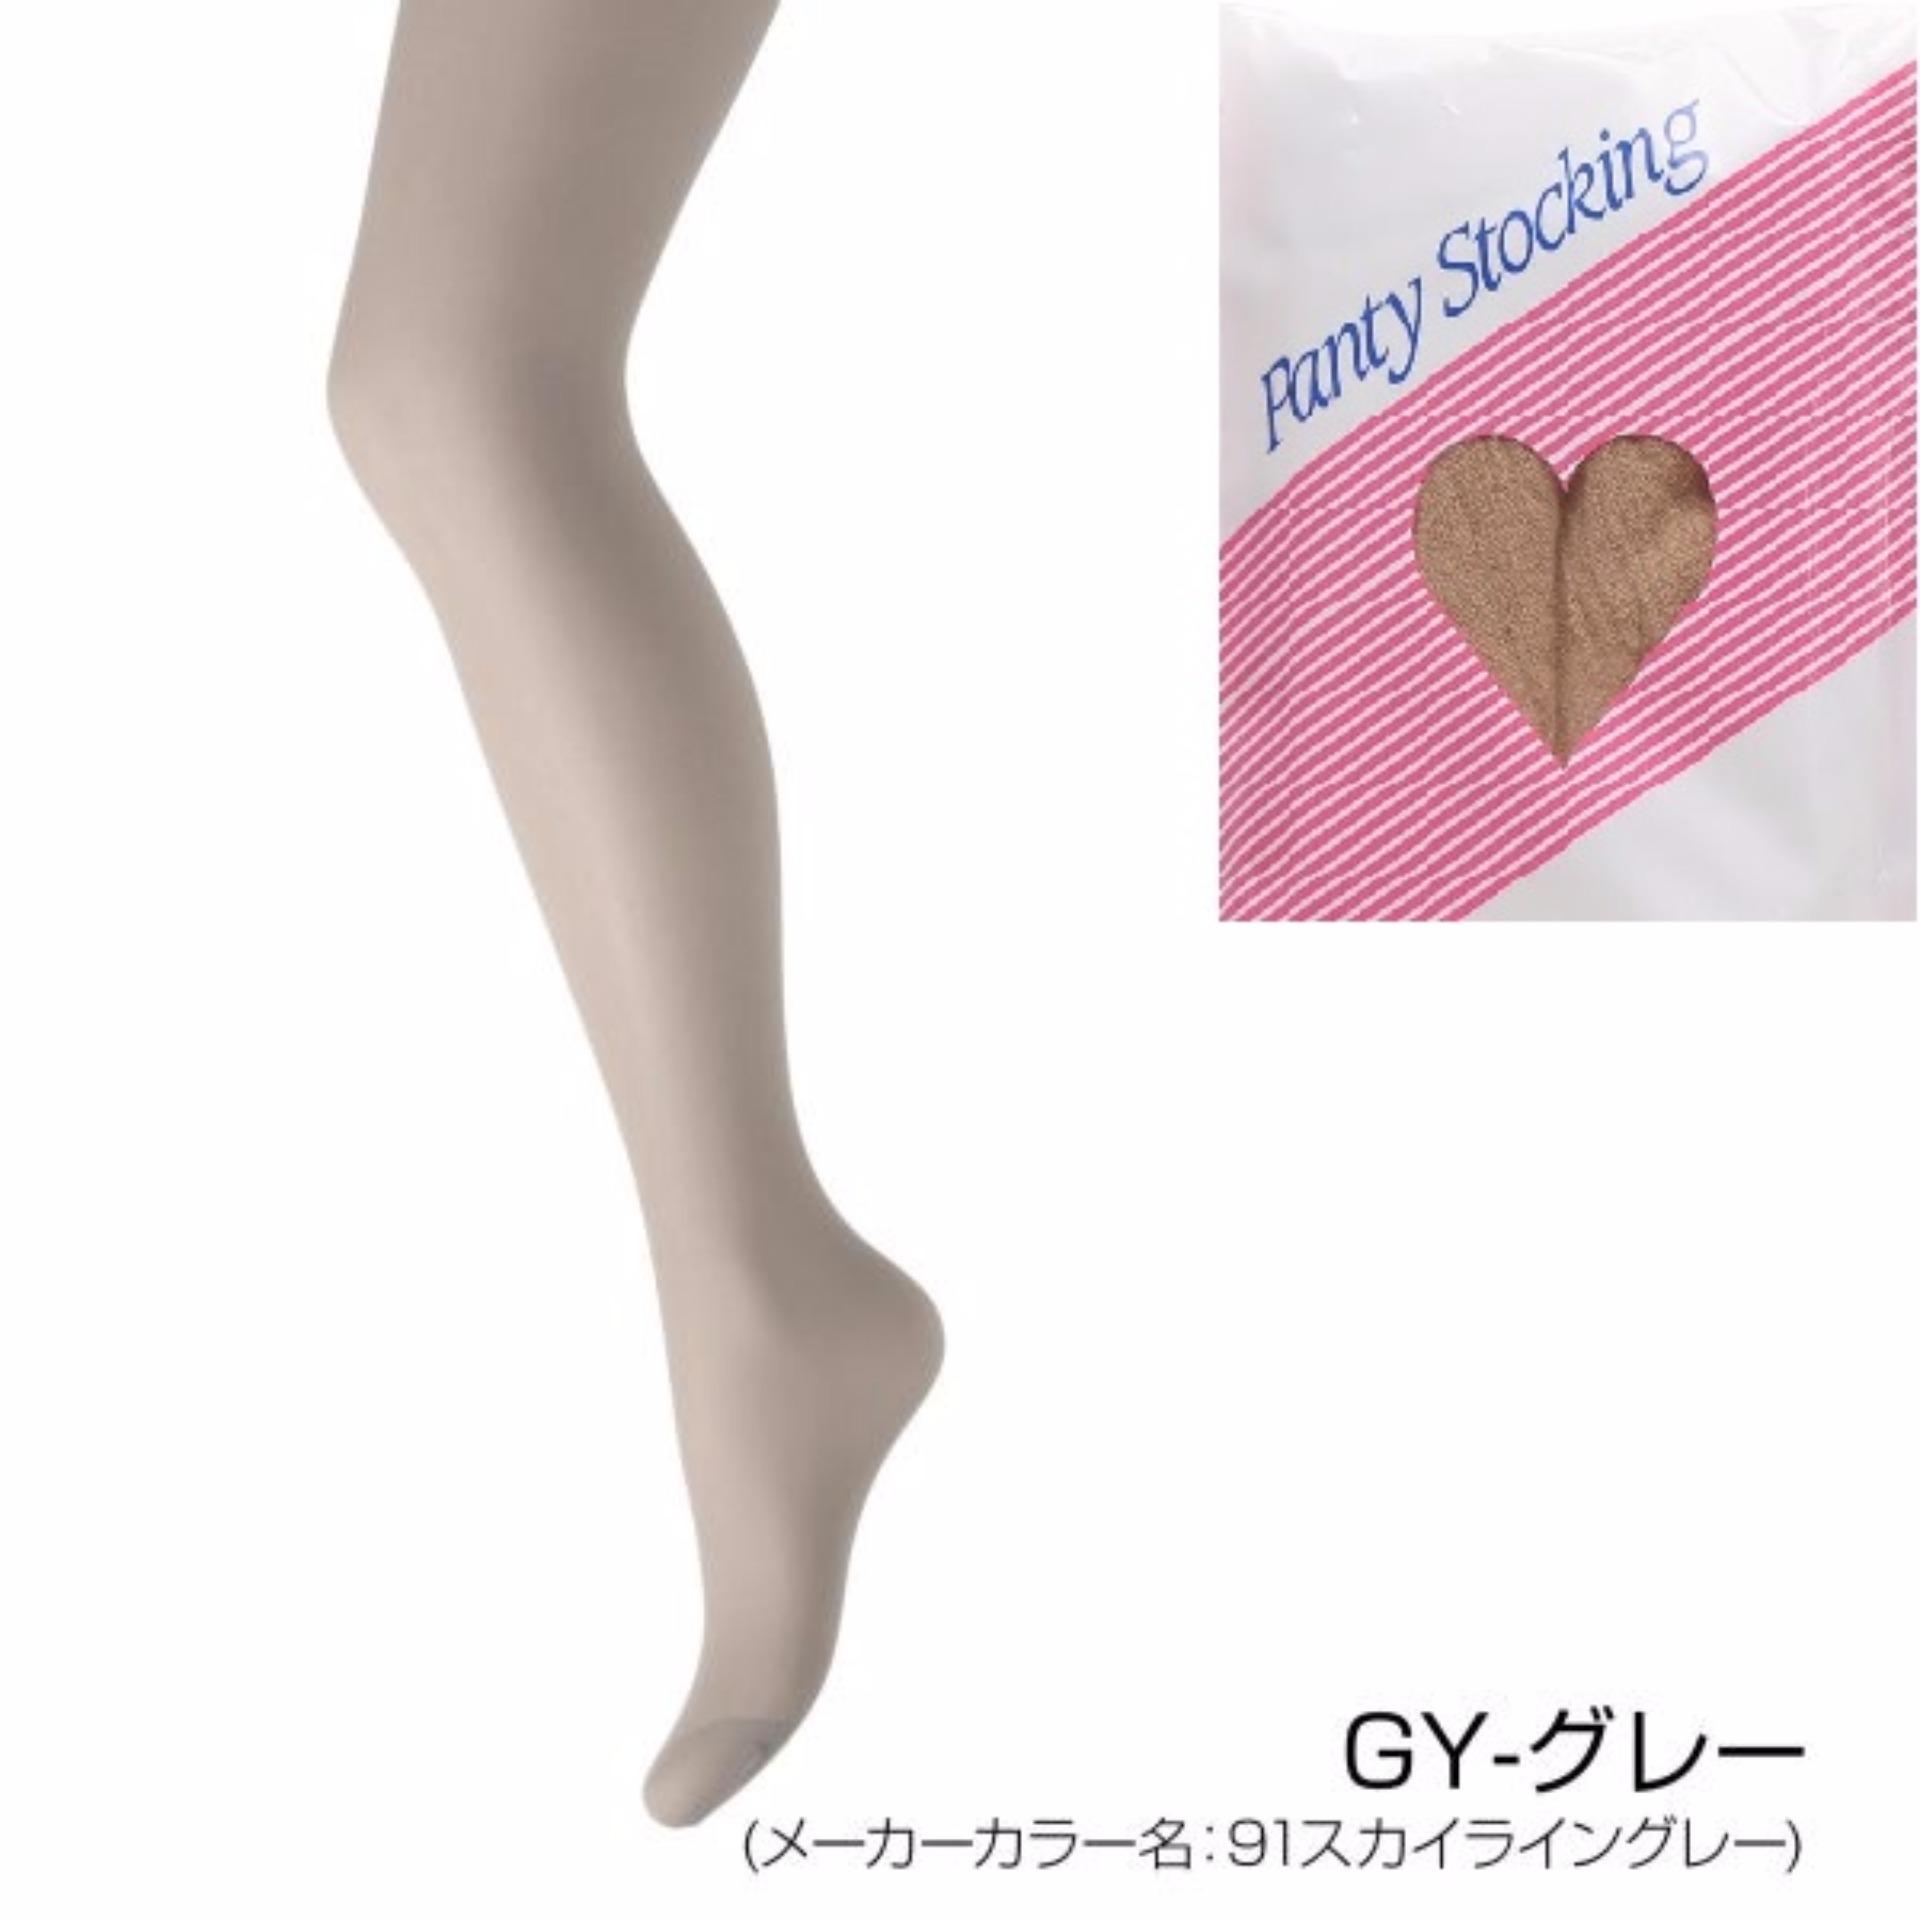 Set 5 Đôi Quần Tất Panty Stocking Size S-L màu da chân - Hàng Nhật Nội Địa